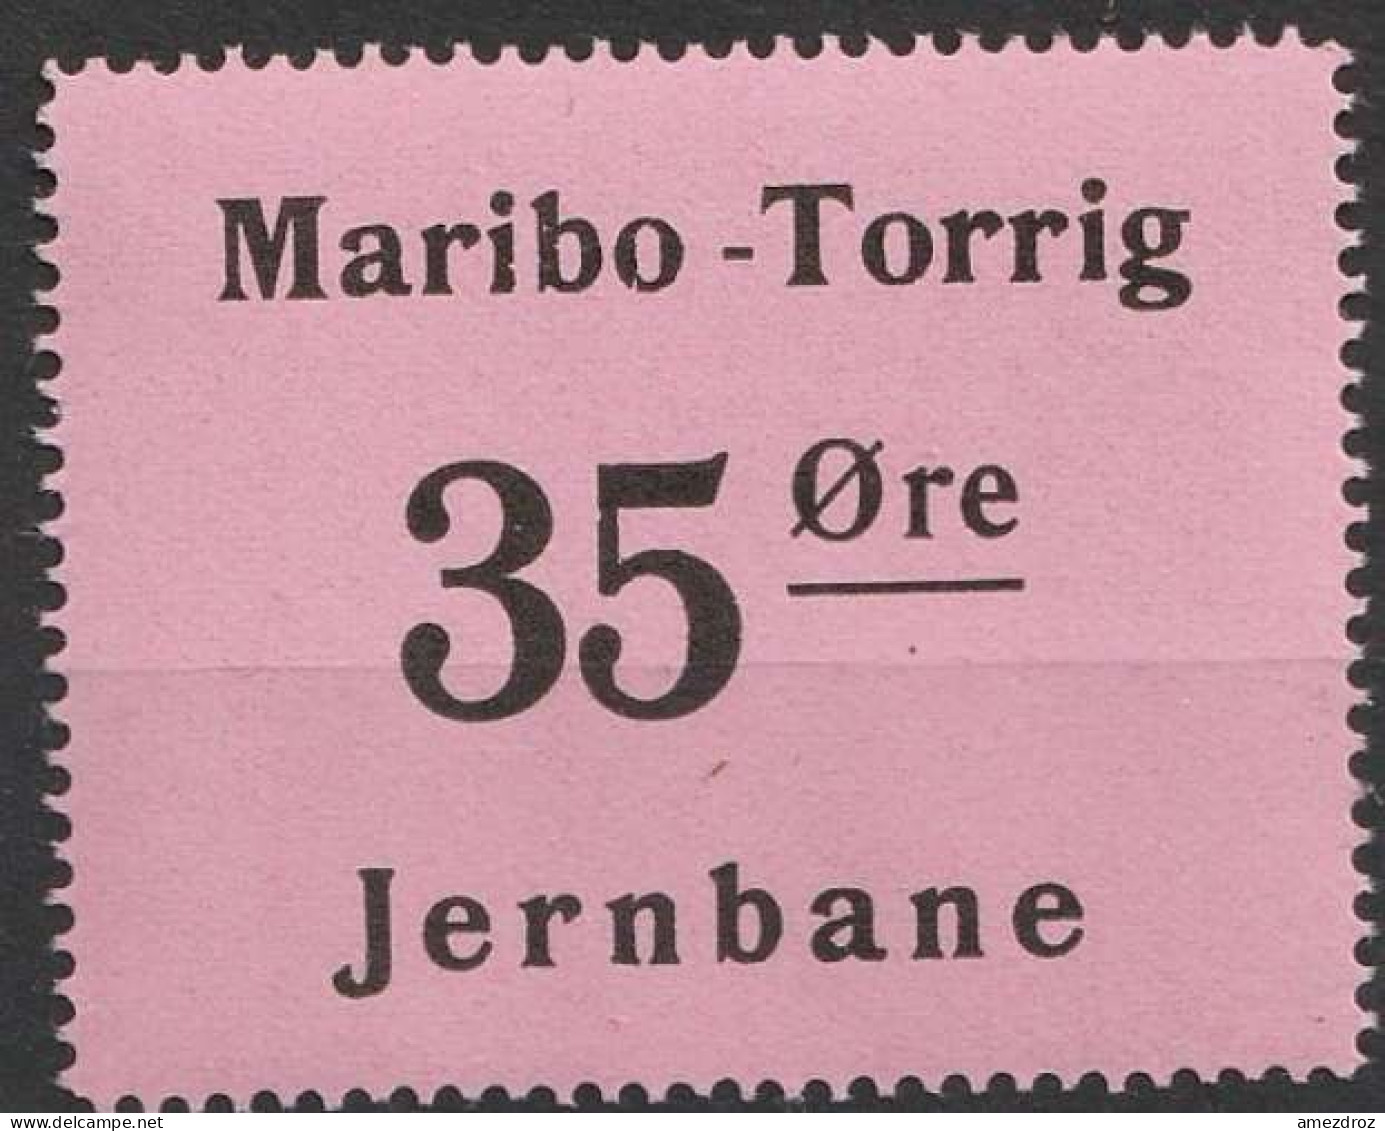 Chemin De Fer Danois ** - Dänemark Railway Eisenbahn Maribo - Torrig Jernbane   (A13) - Parcel Post